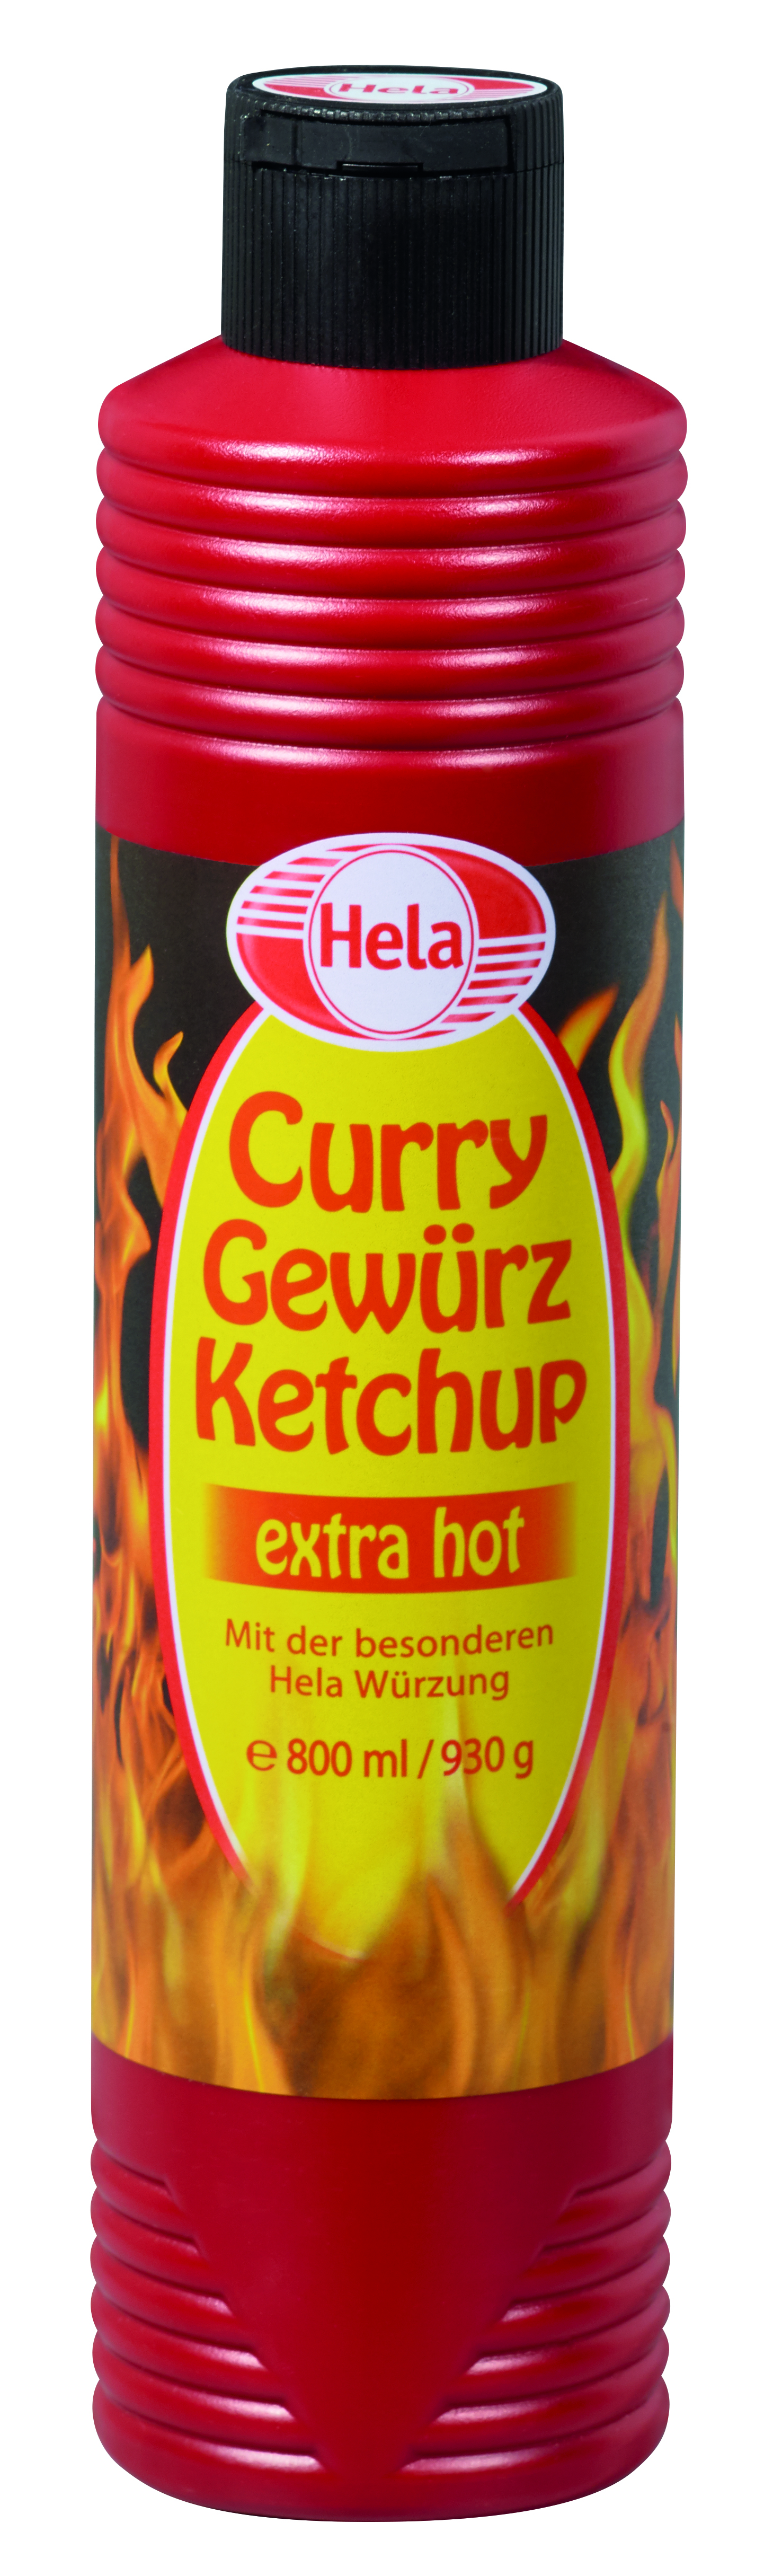 Hela, Curry Gewürz Ketchup, extra scharf, 800ml, Flasche